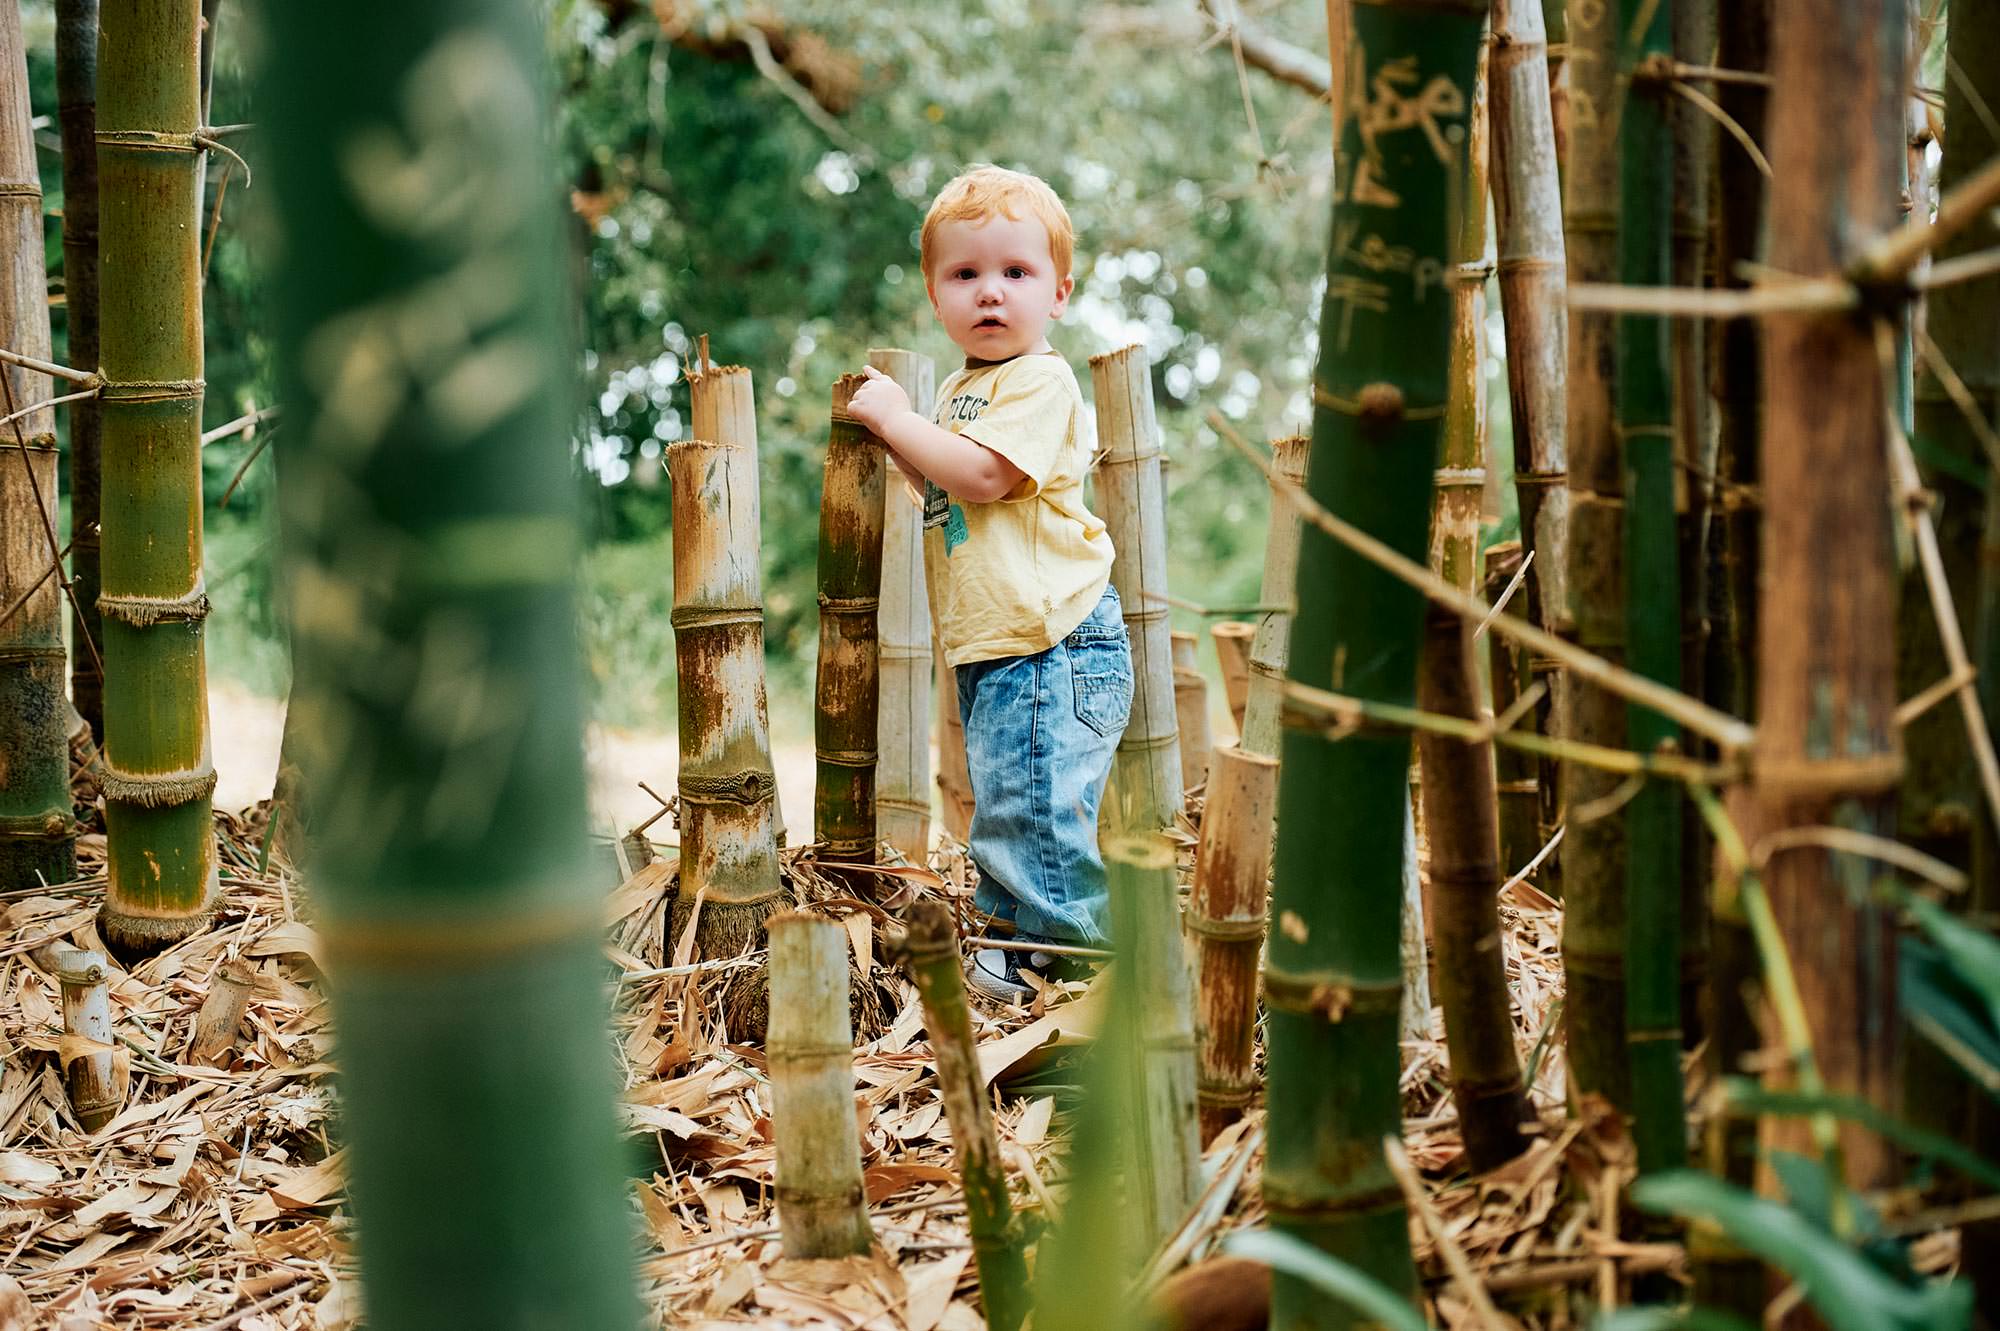 Nathan amongst the bamboo